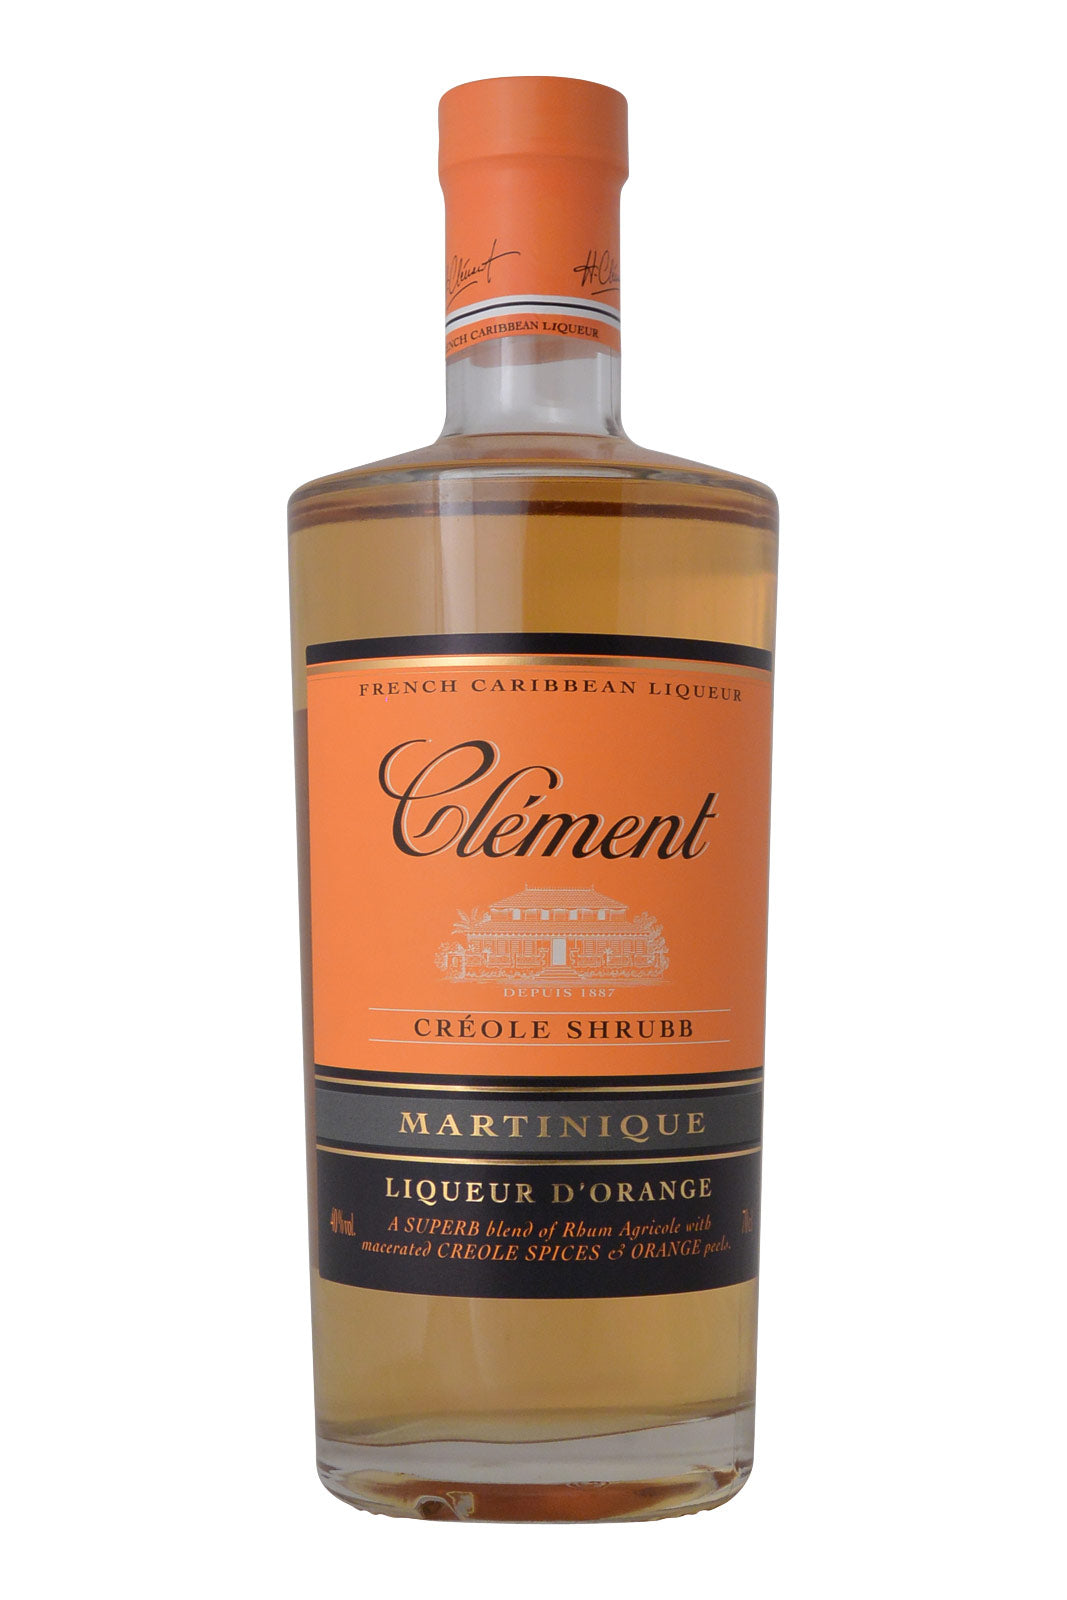 Clement liqueur Shrubb Liqueur d'Orange